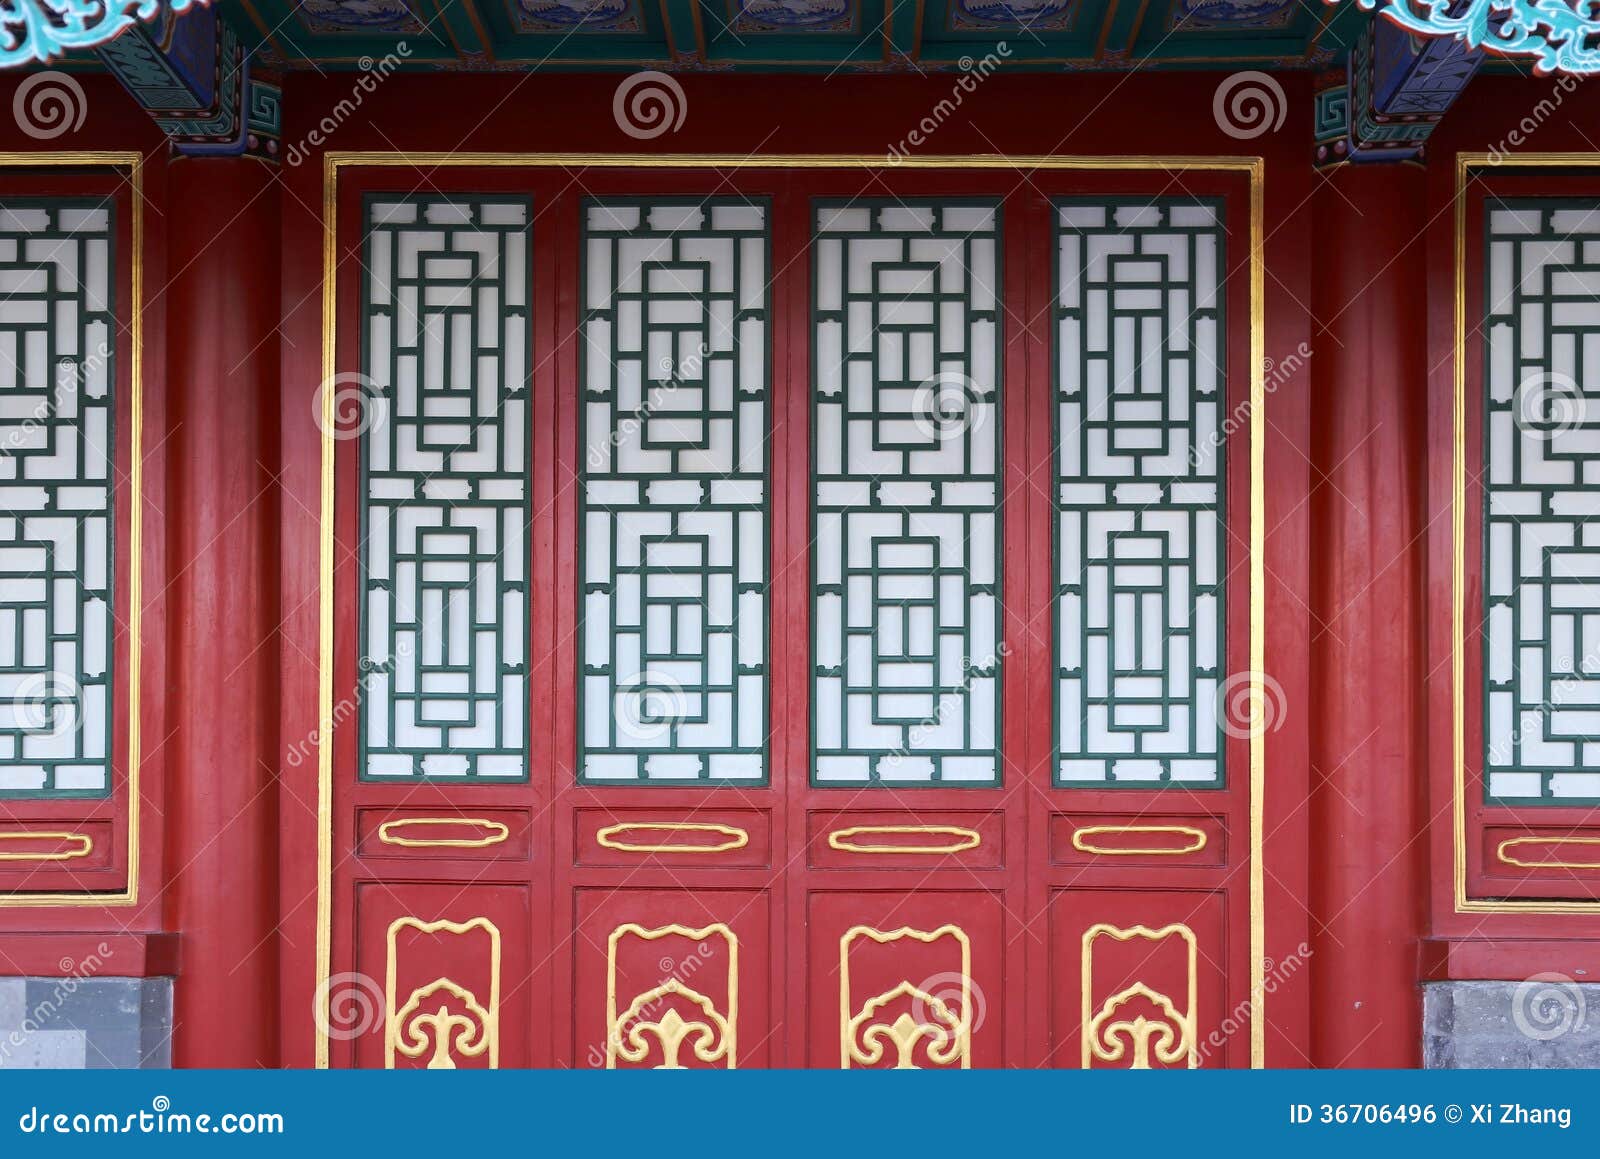 Двери в китайских домах. Китайские двери традиционные. Китайские окна традиционные. Окна в китайском стиле. Двери в традиционном китайском доме.